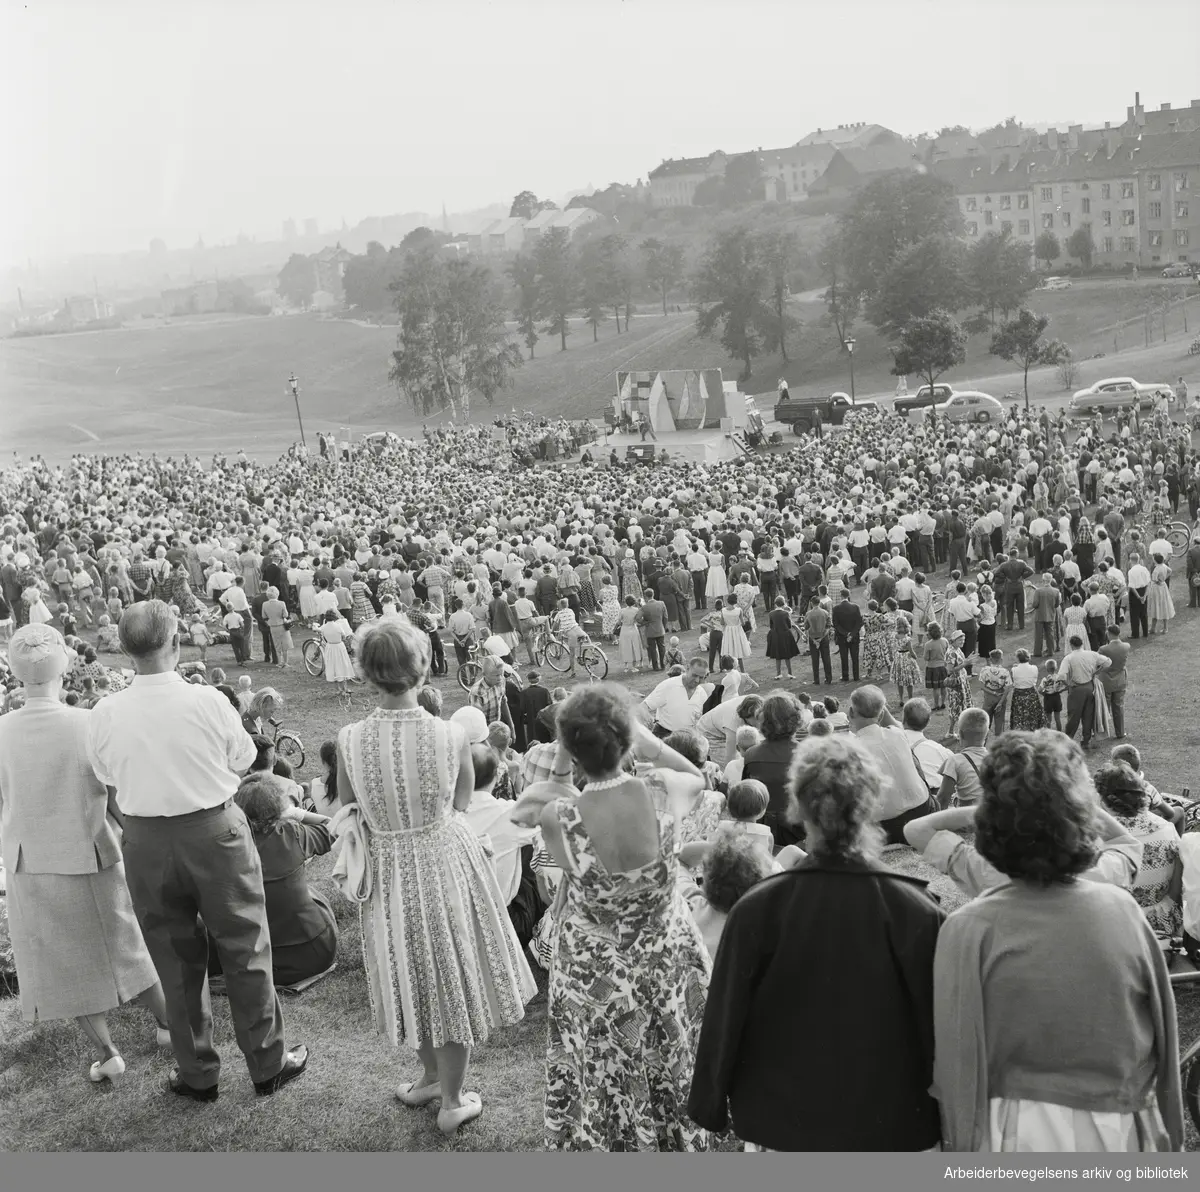 Oslo kommunes parkkvelder: "Park non stop show". Avslutningen på årets sesong ble holdt i Torshovdalen. 24. August 1959.